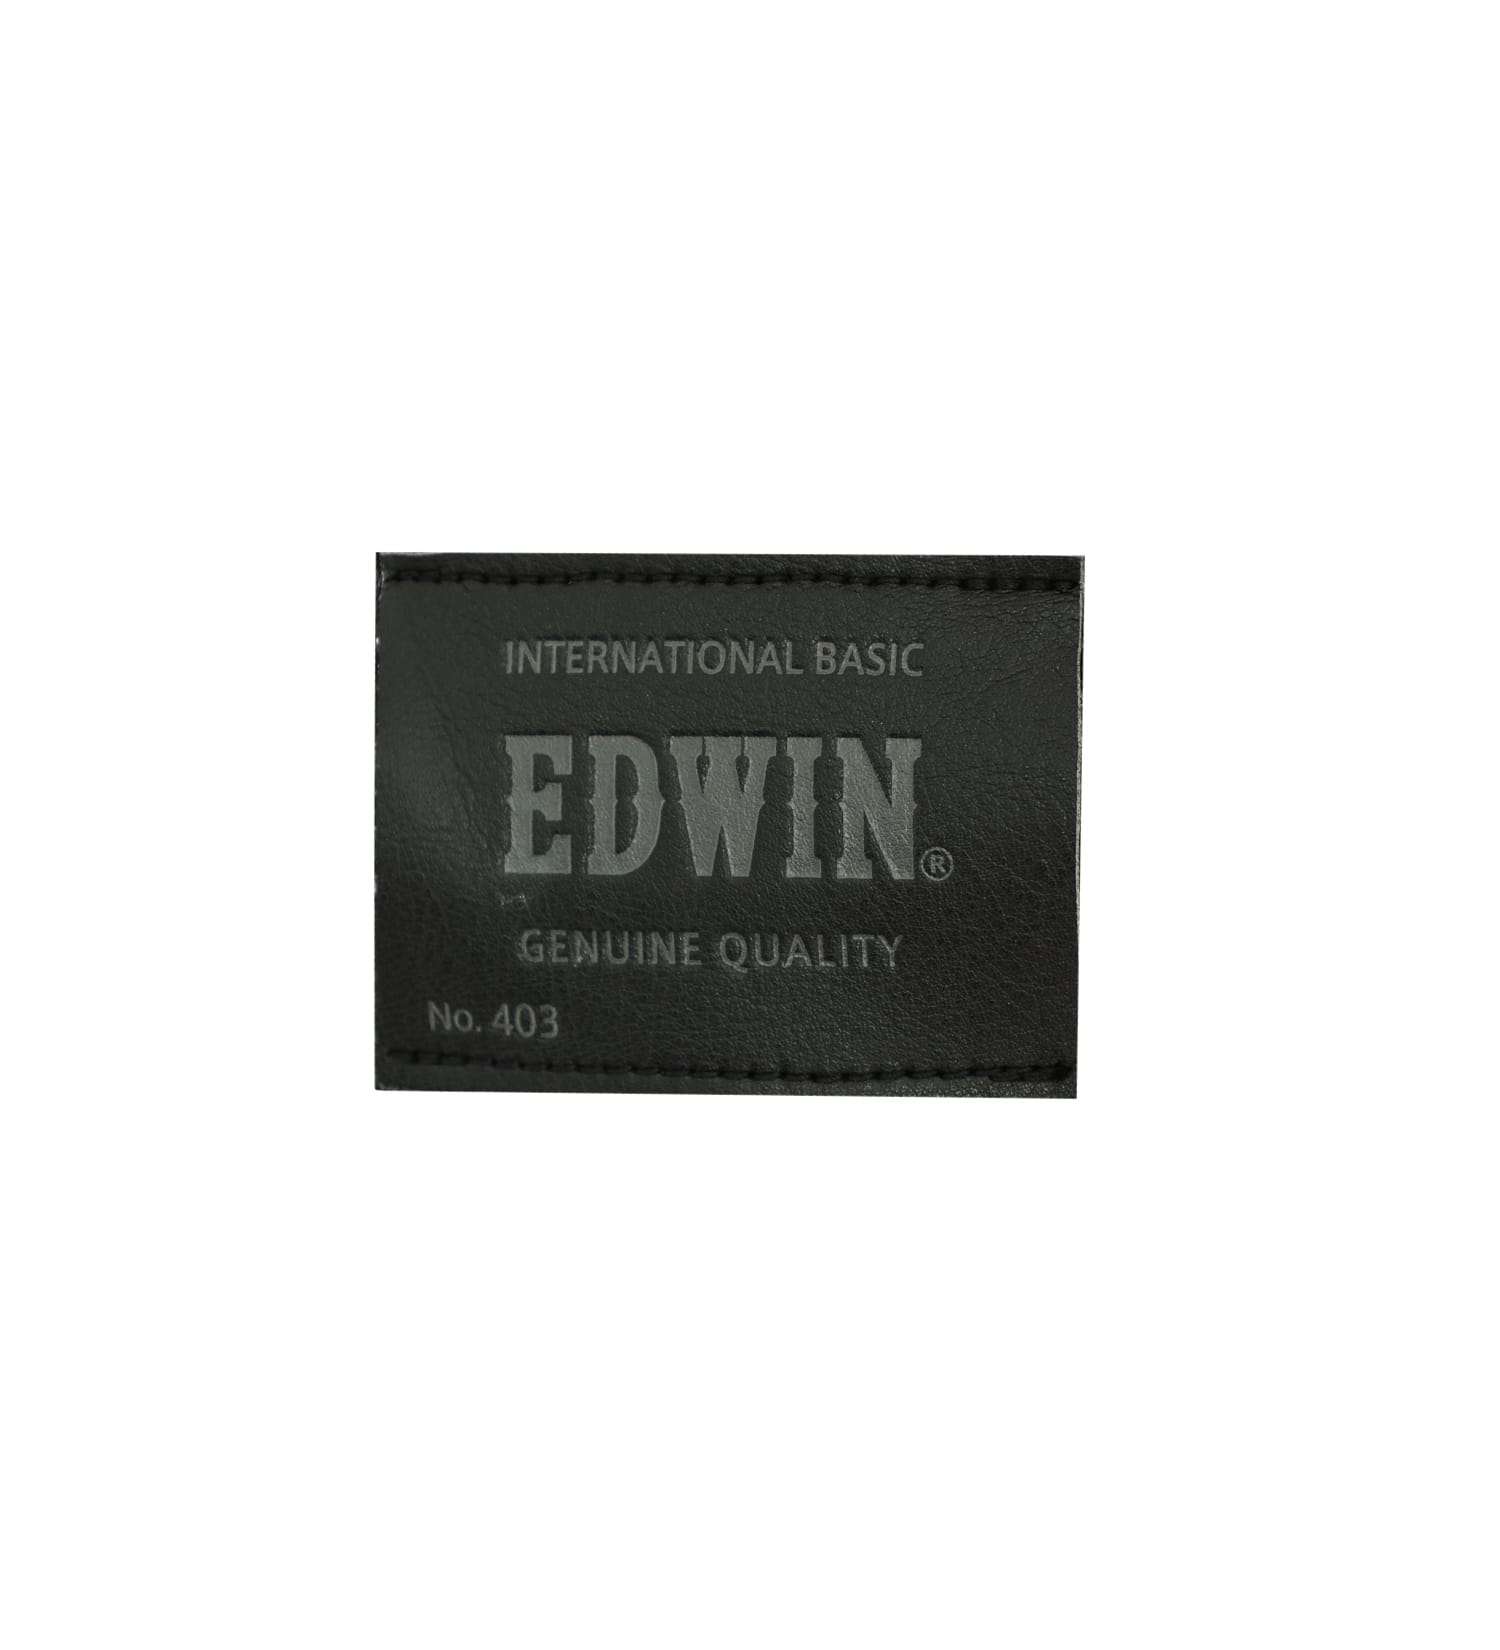 EDWIN(エドウイン)の【SALE】403 WARM FLEX スラッシュポケット ストレート[暖](チェック)|パンツ/パンツ/メンズ|グレー系その他